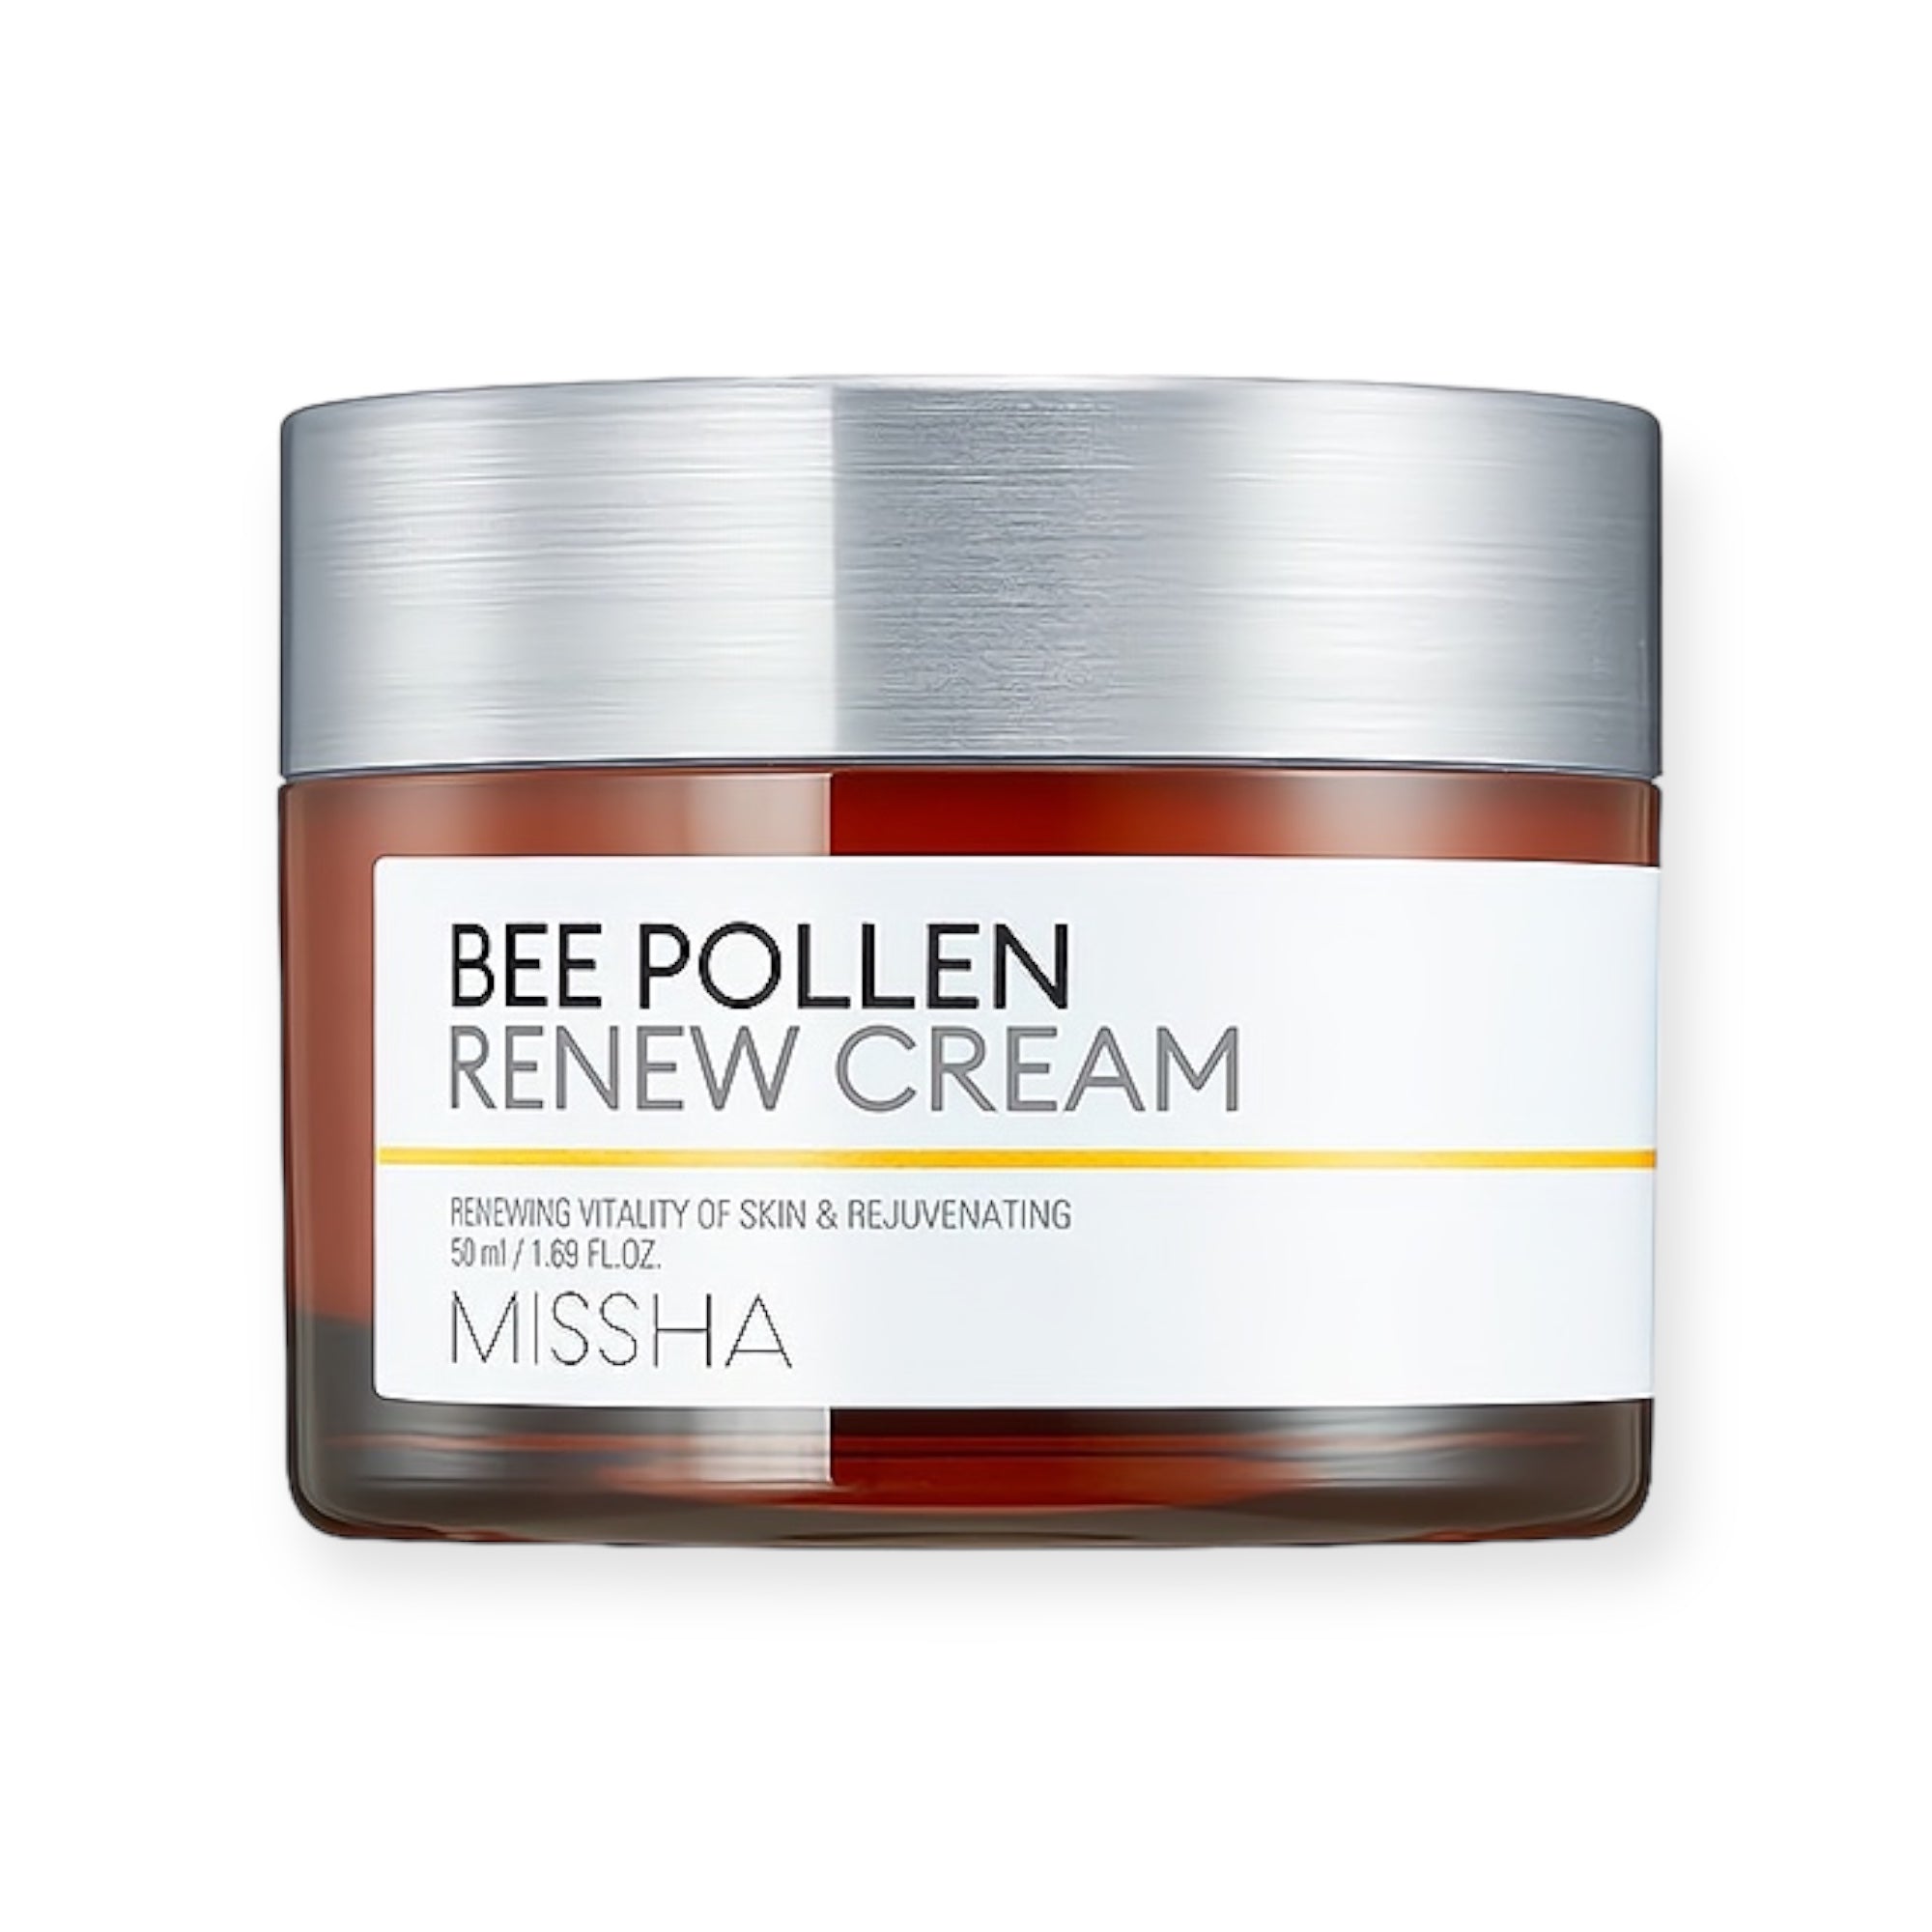 Bee Pollen Renew Cream